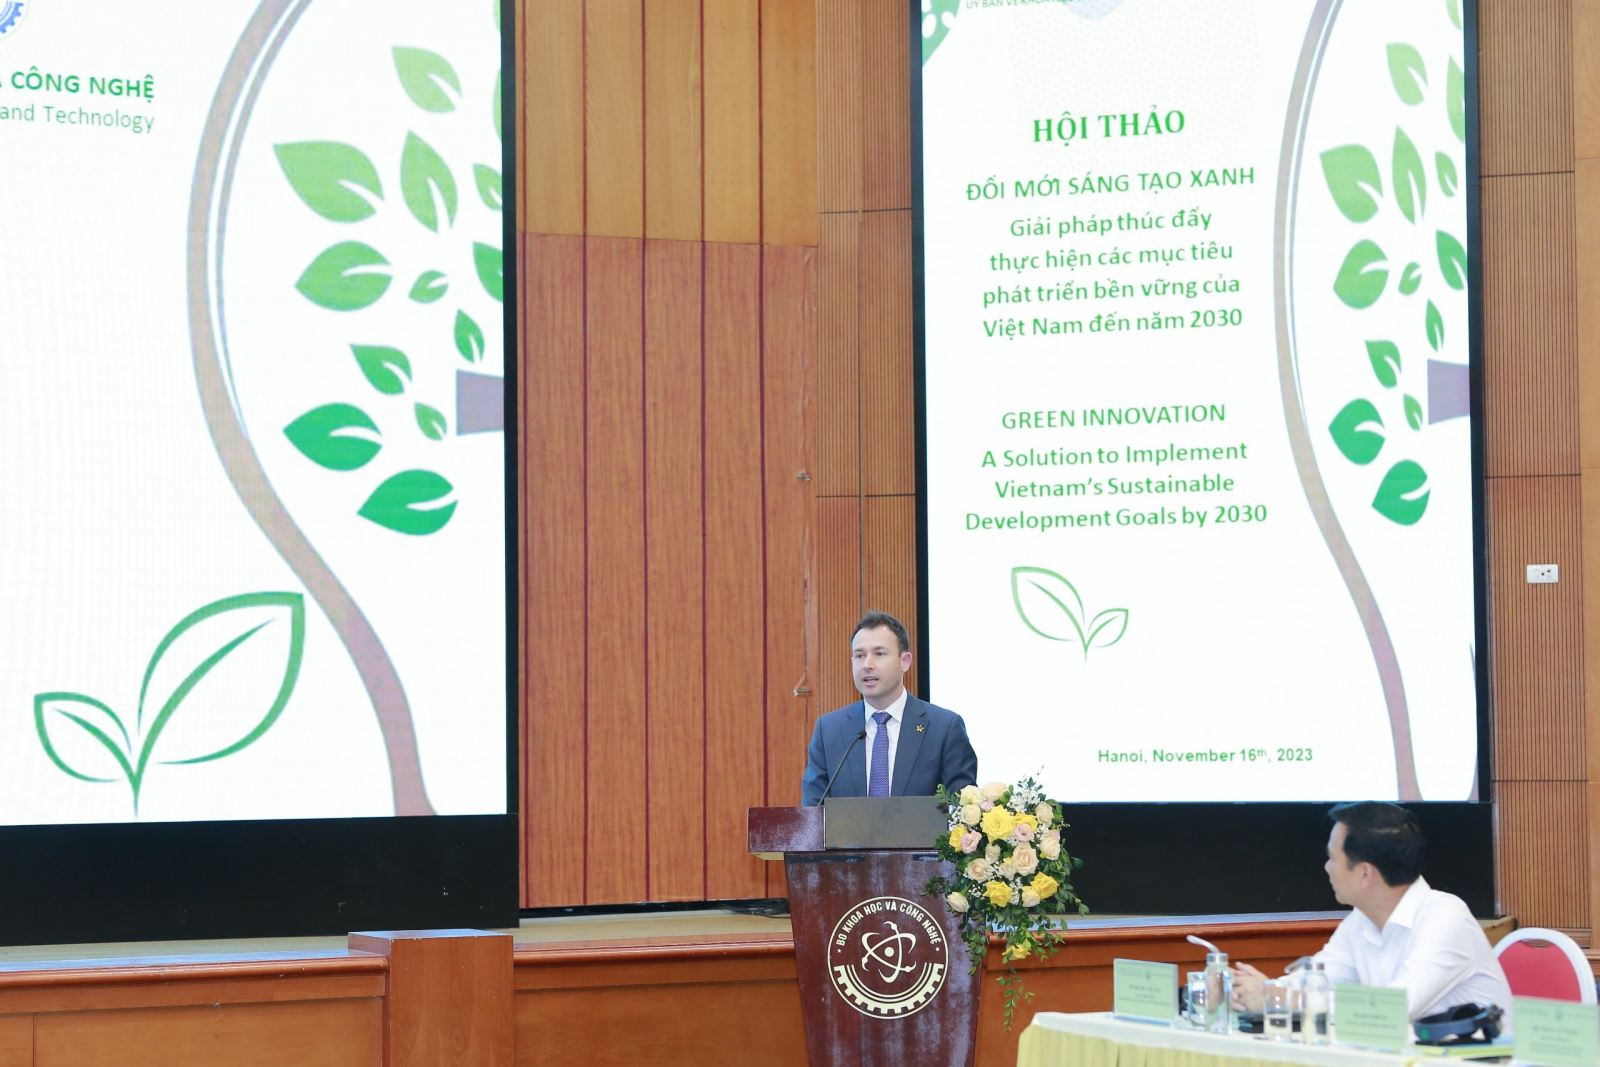 Thúc đẩy đổi mới sáng tạo xanh - Giải pháp thực hiện các mục tiêu phát triển bền vững của Việt Nam đến năm 2030 - Ảnh 3.